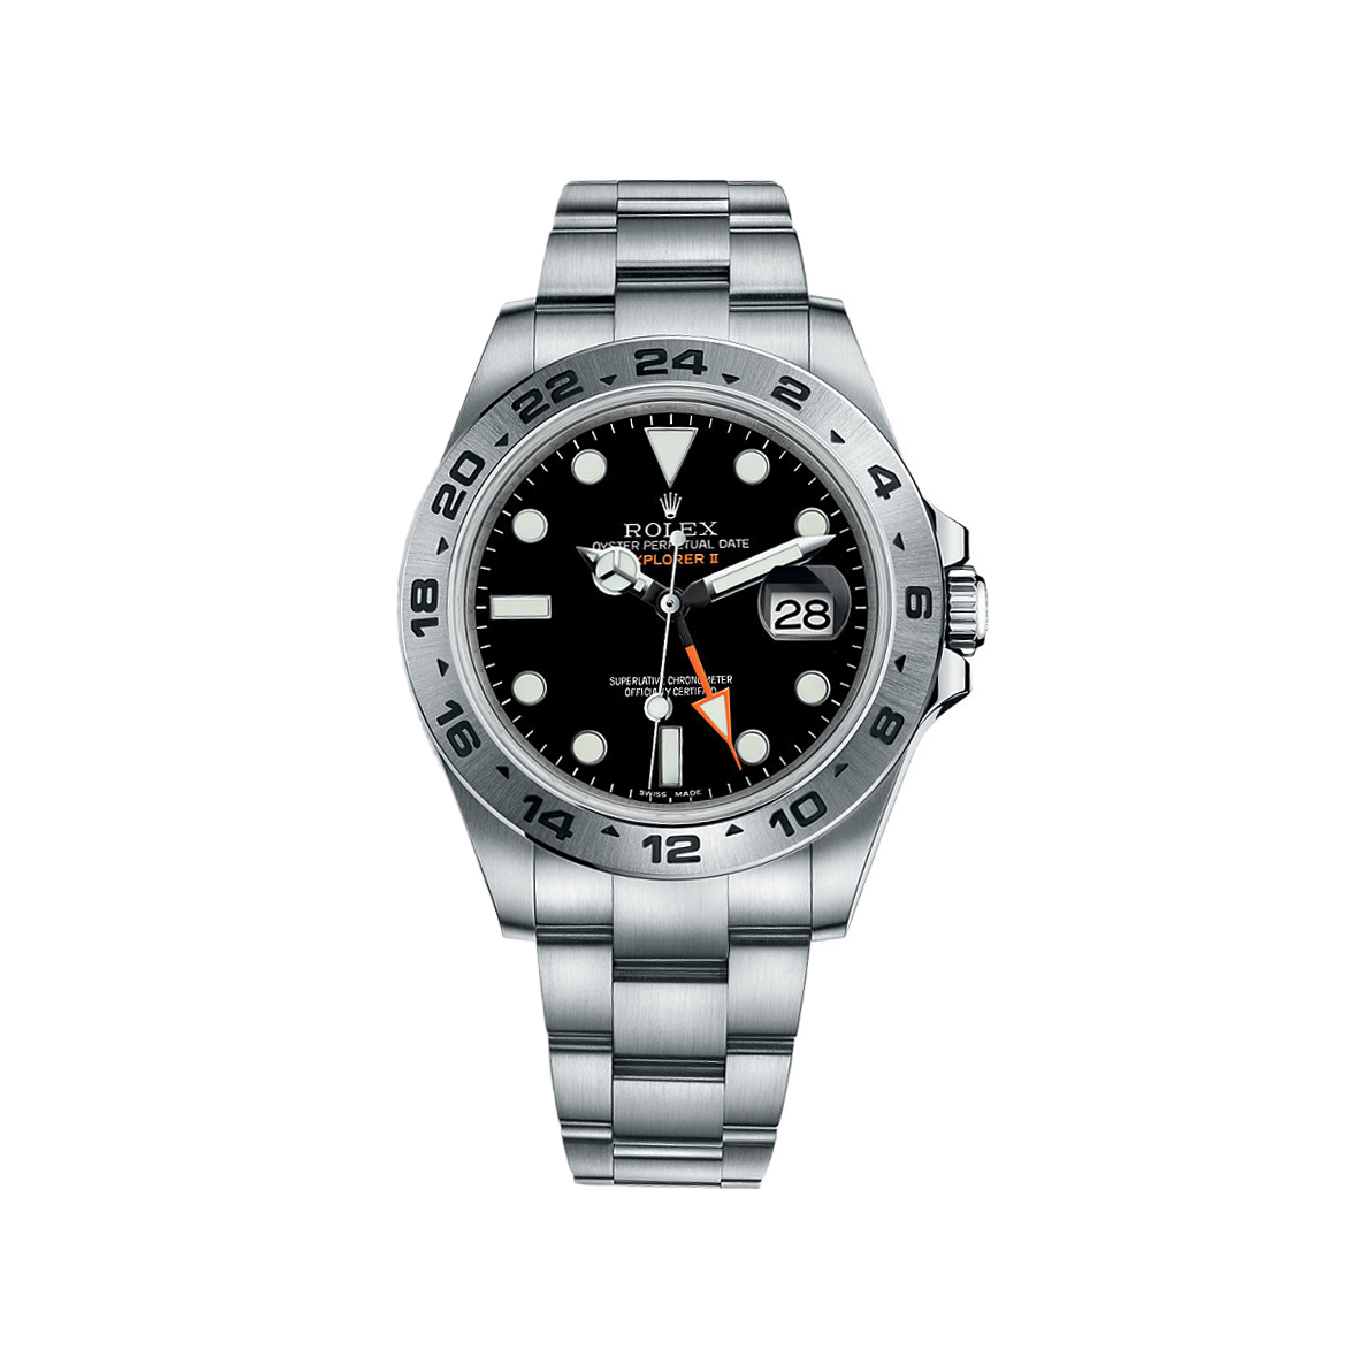 Explorer II 216570 Stainless Steel Watch (Black)